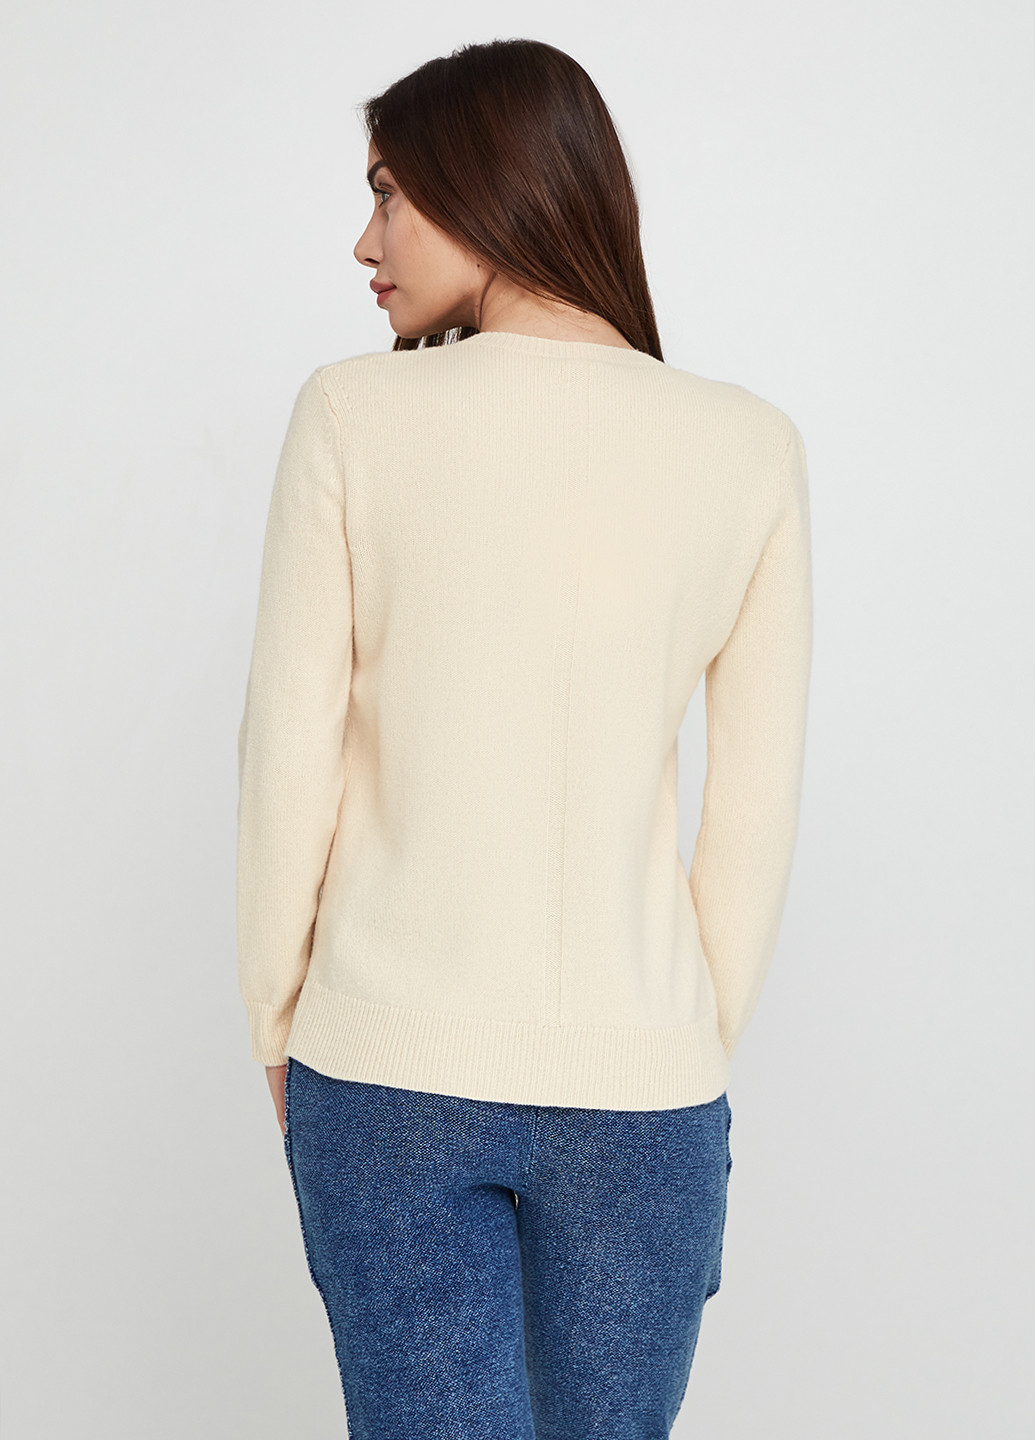 Желтый демисезонный пуловер пуловер The Row